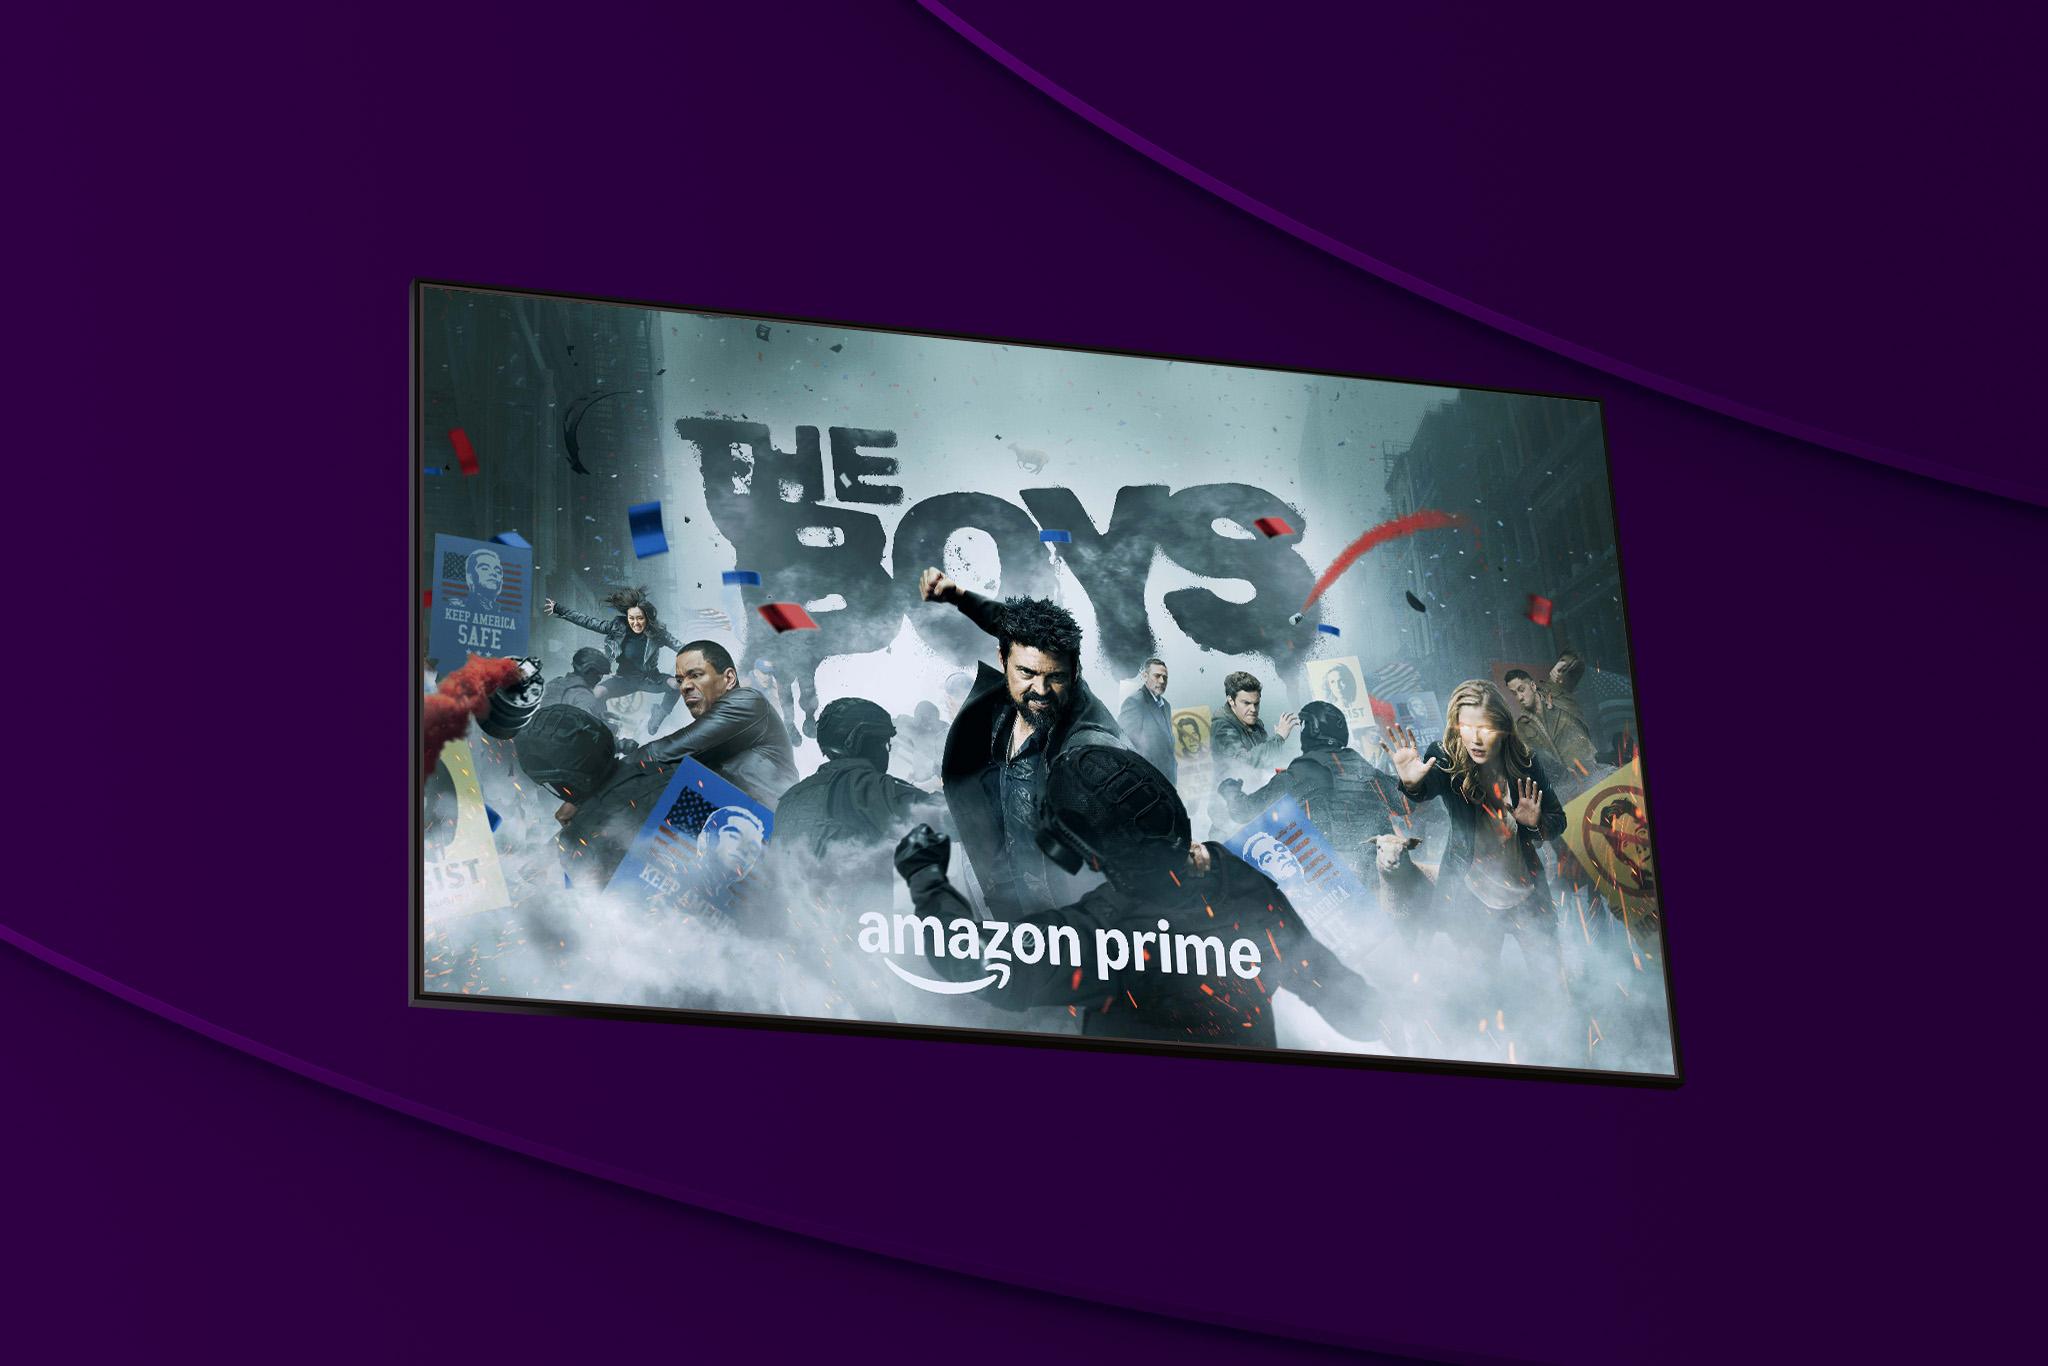 Omslagsbild för serien The Boys som går att streama på Amazon Prime